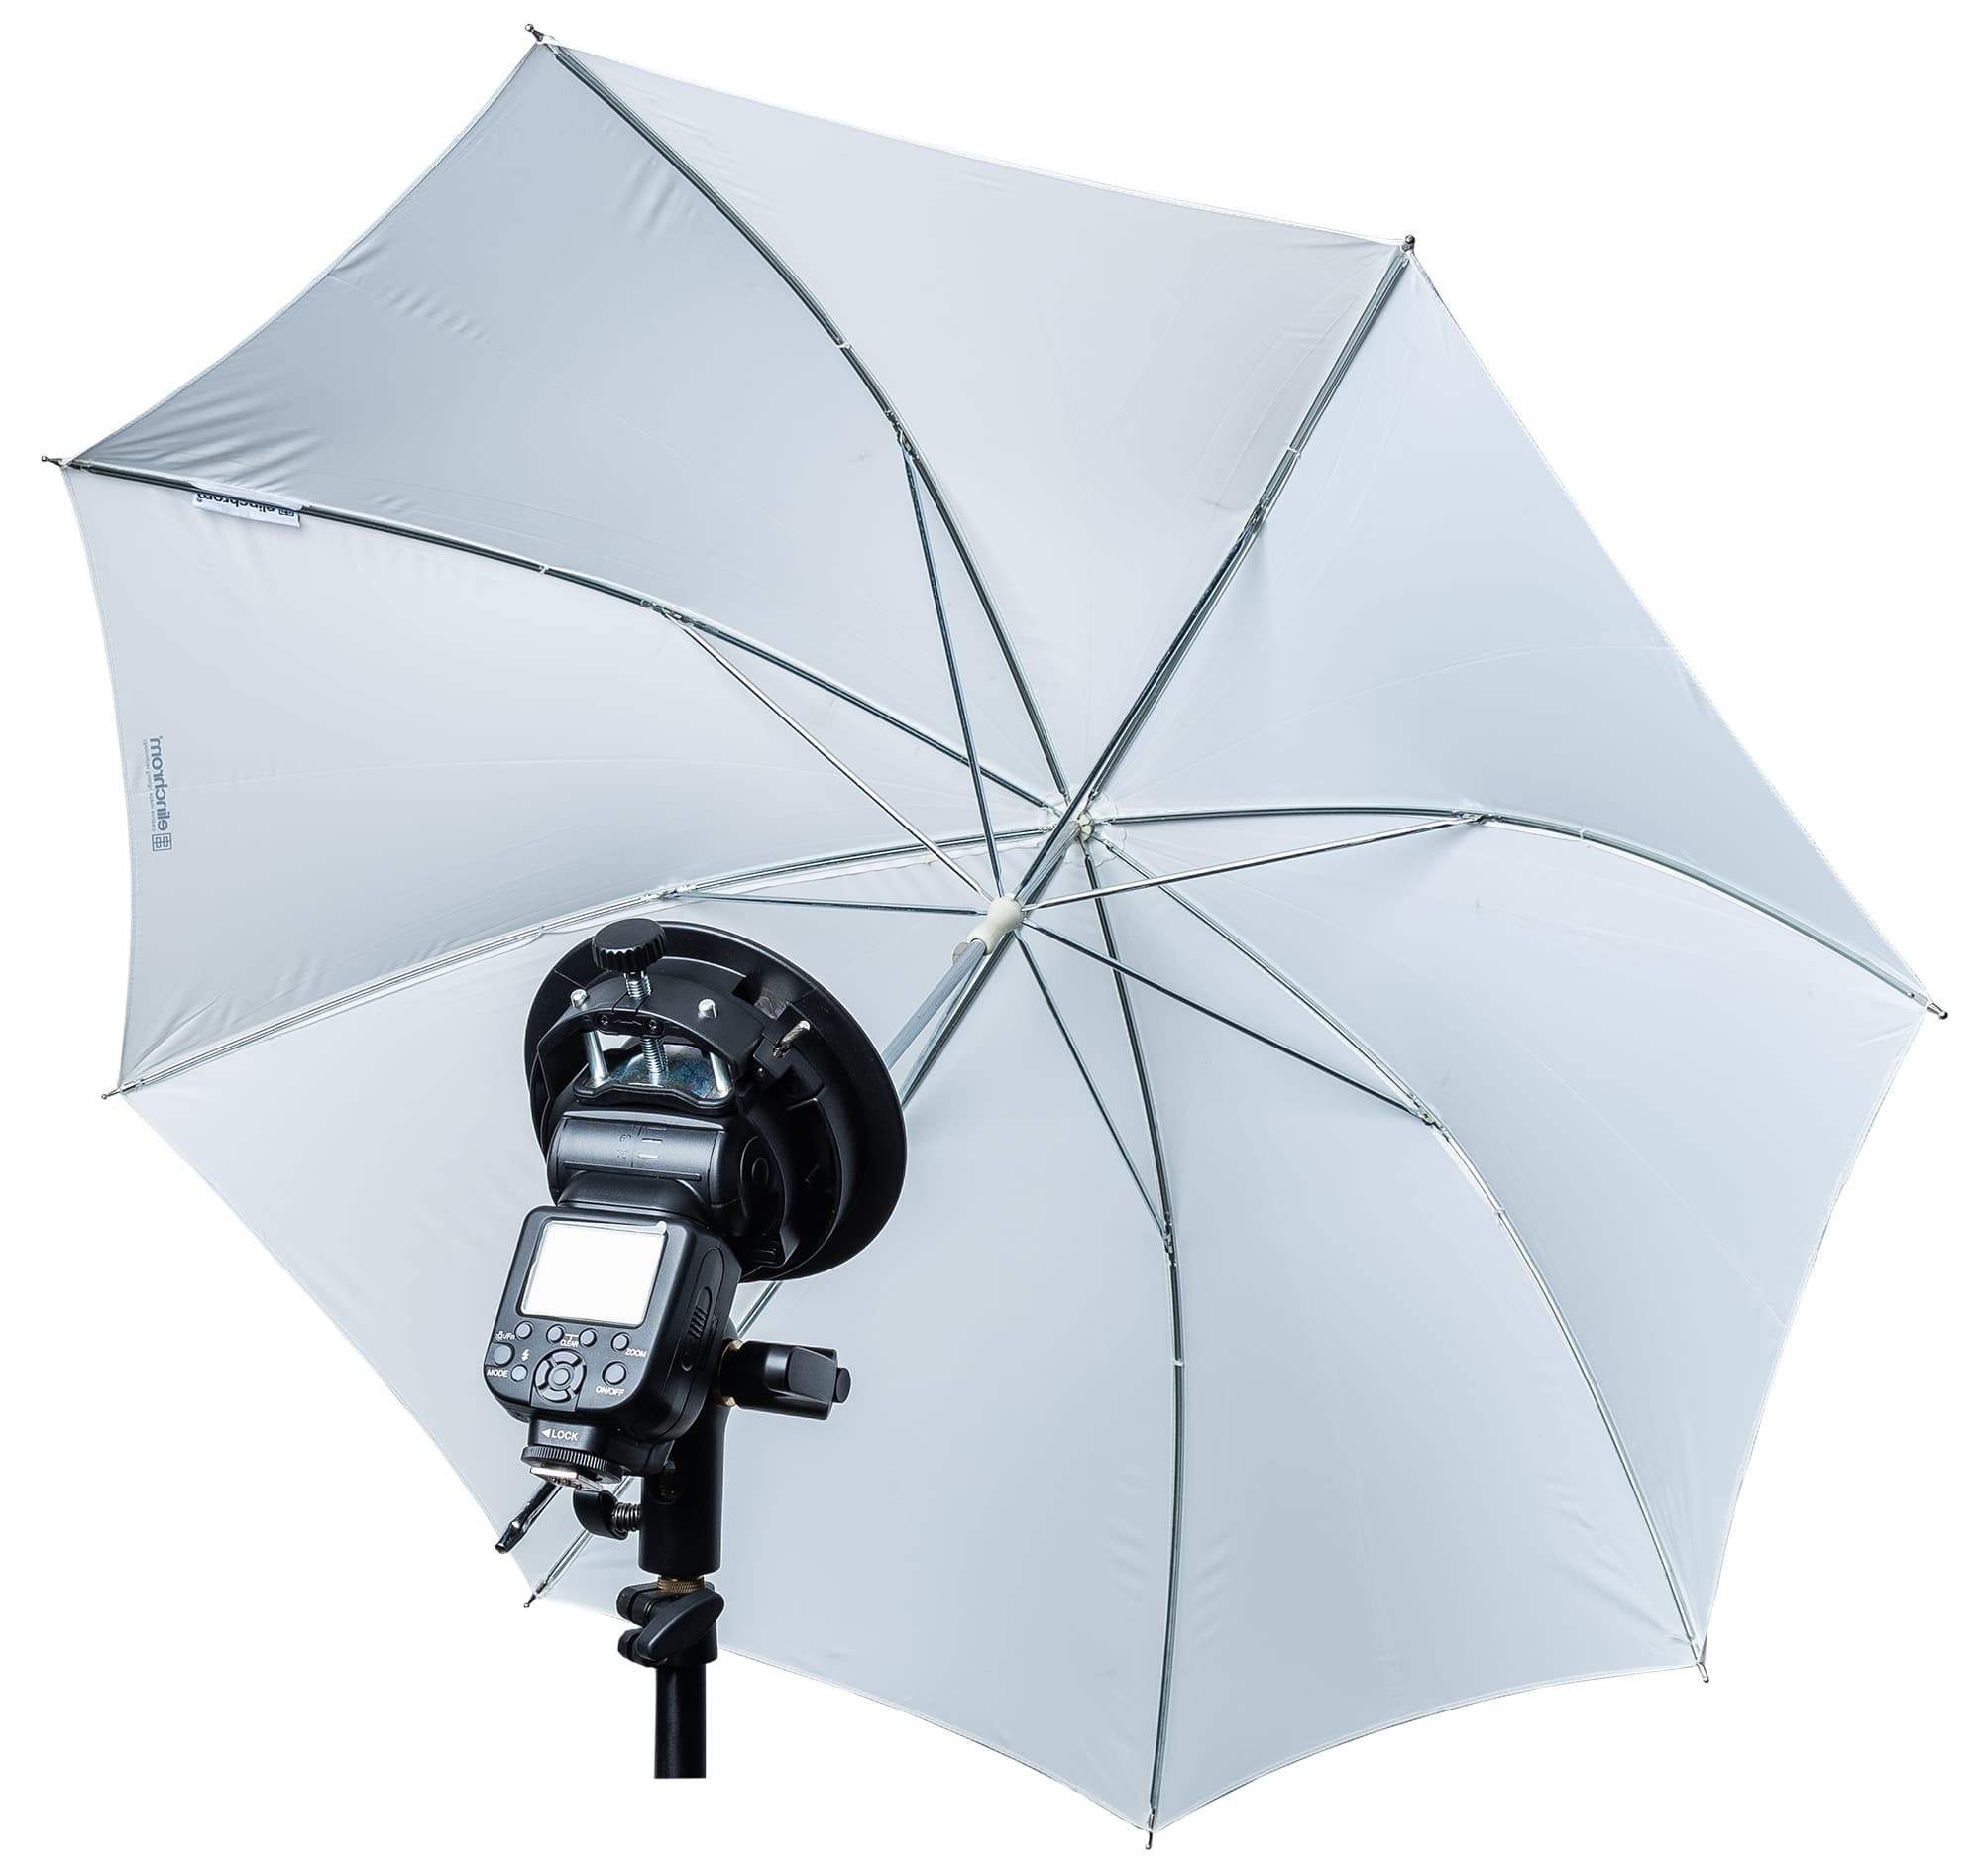 Shooting through a white umbrella